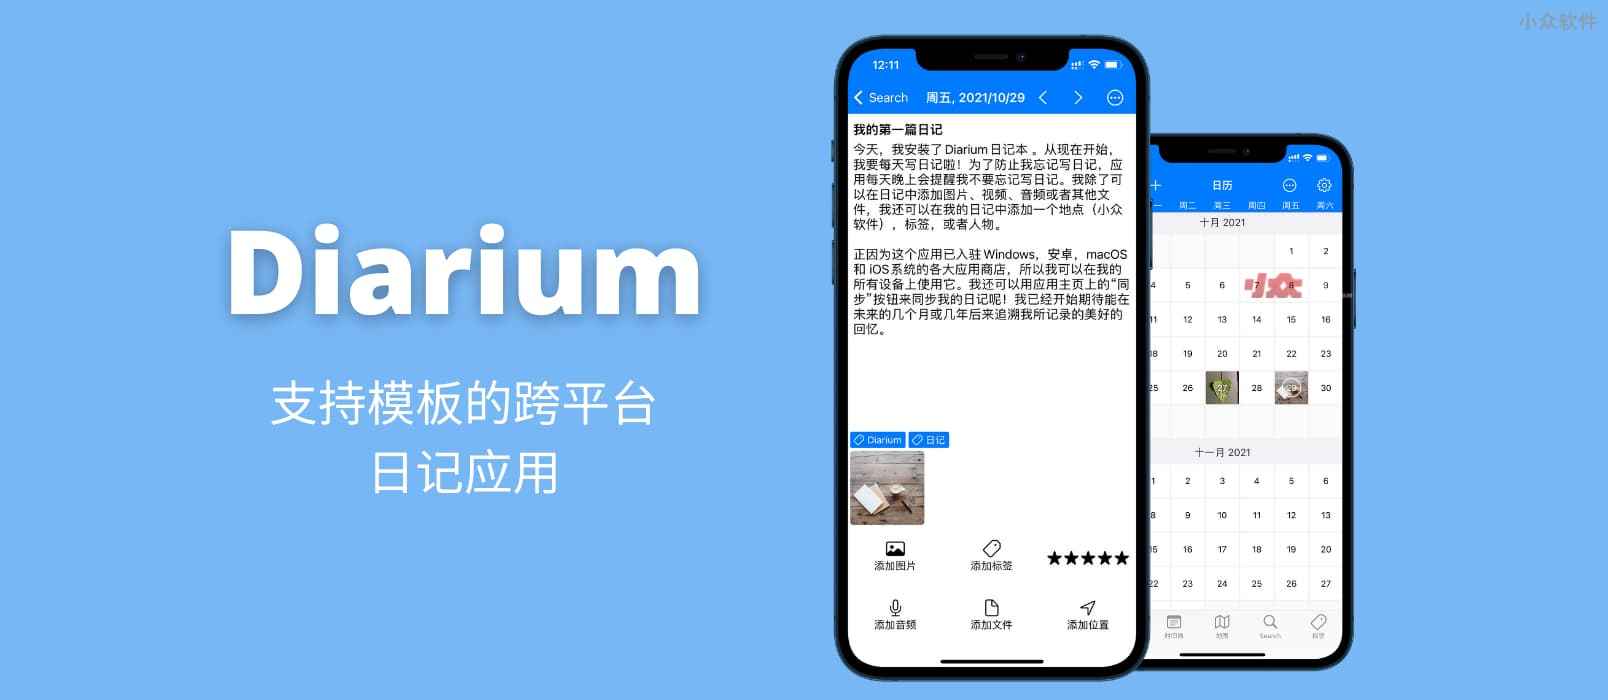 Diarium - 支持日记模板的跨平台日记应用